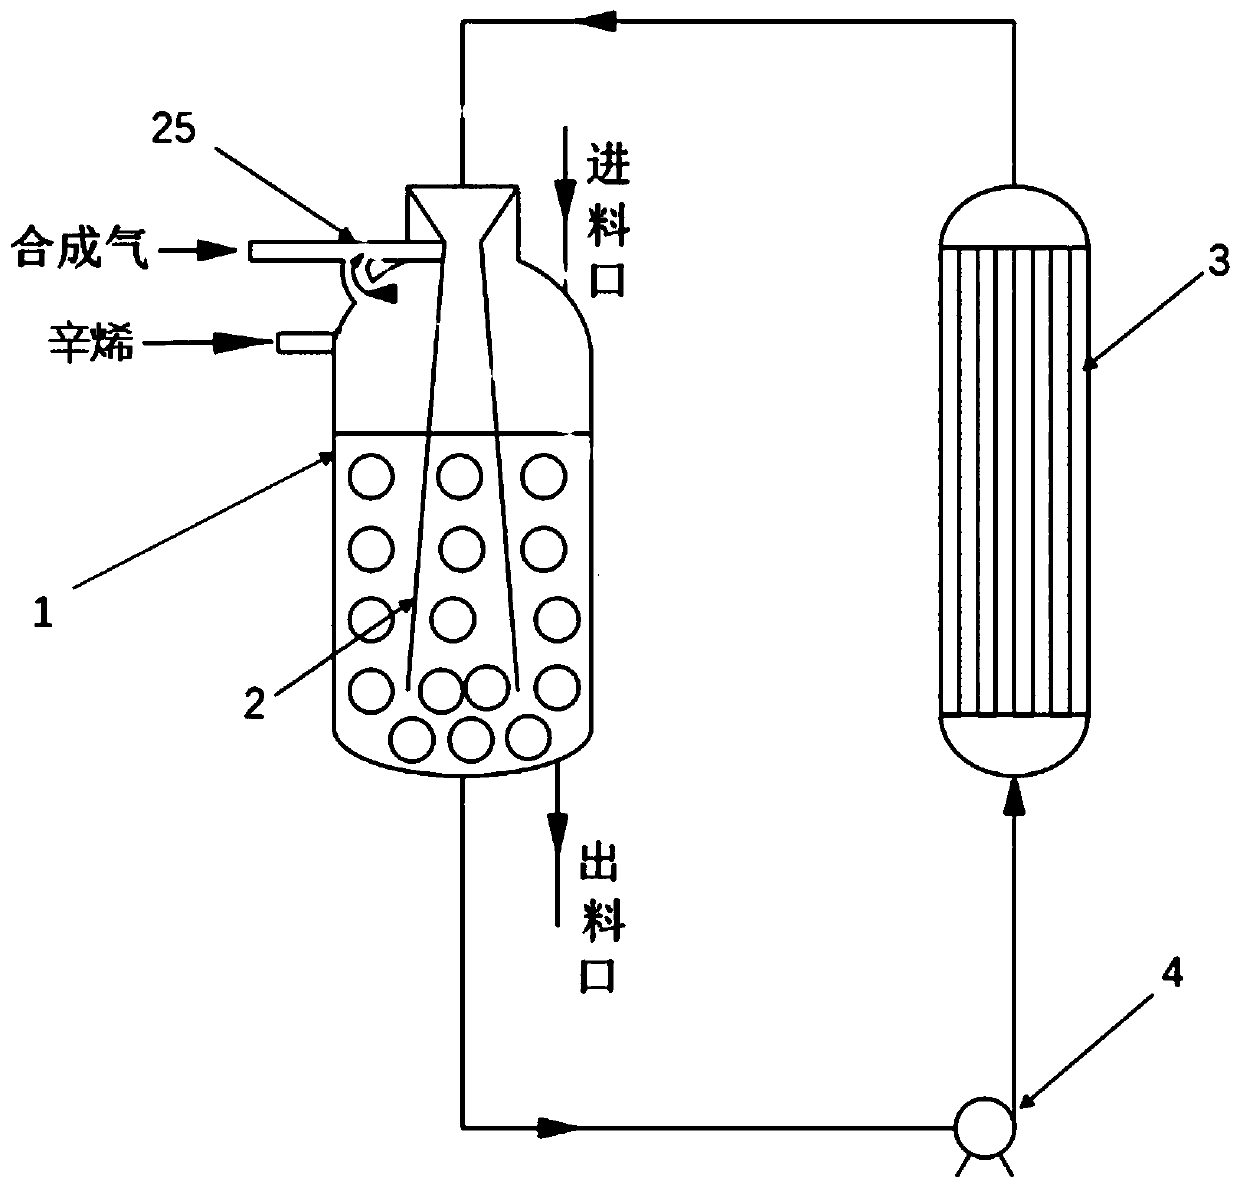 Method for preparing nonanal by adopting loop reactor and venturi ejector for preparing nonanal